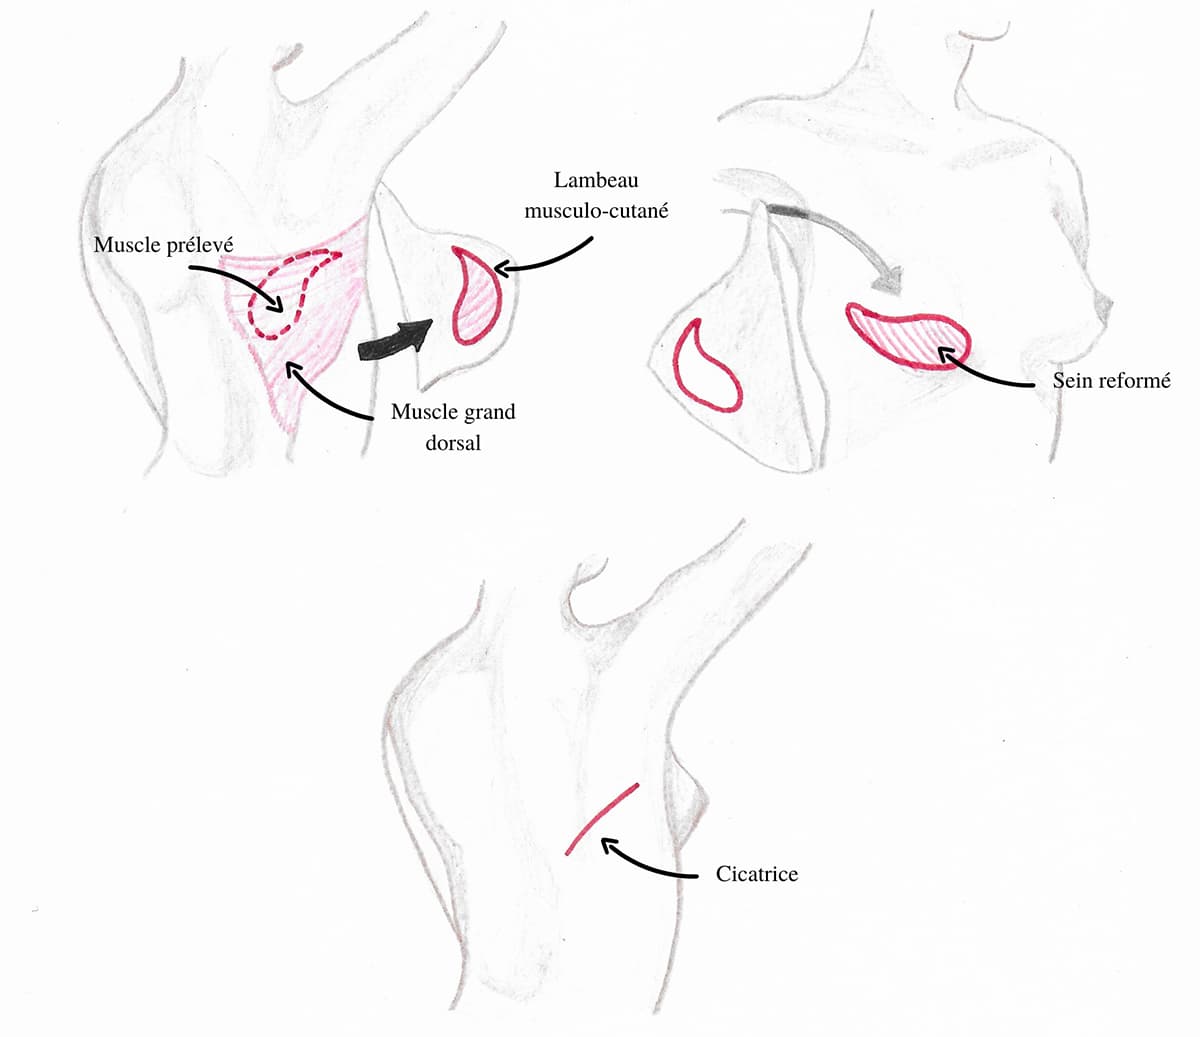 Schema exolicatif de la technique de reconstruction mammaire par lambeau du grand dorsal